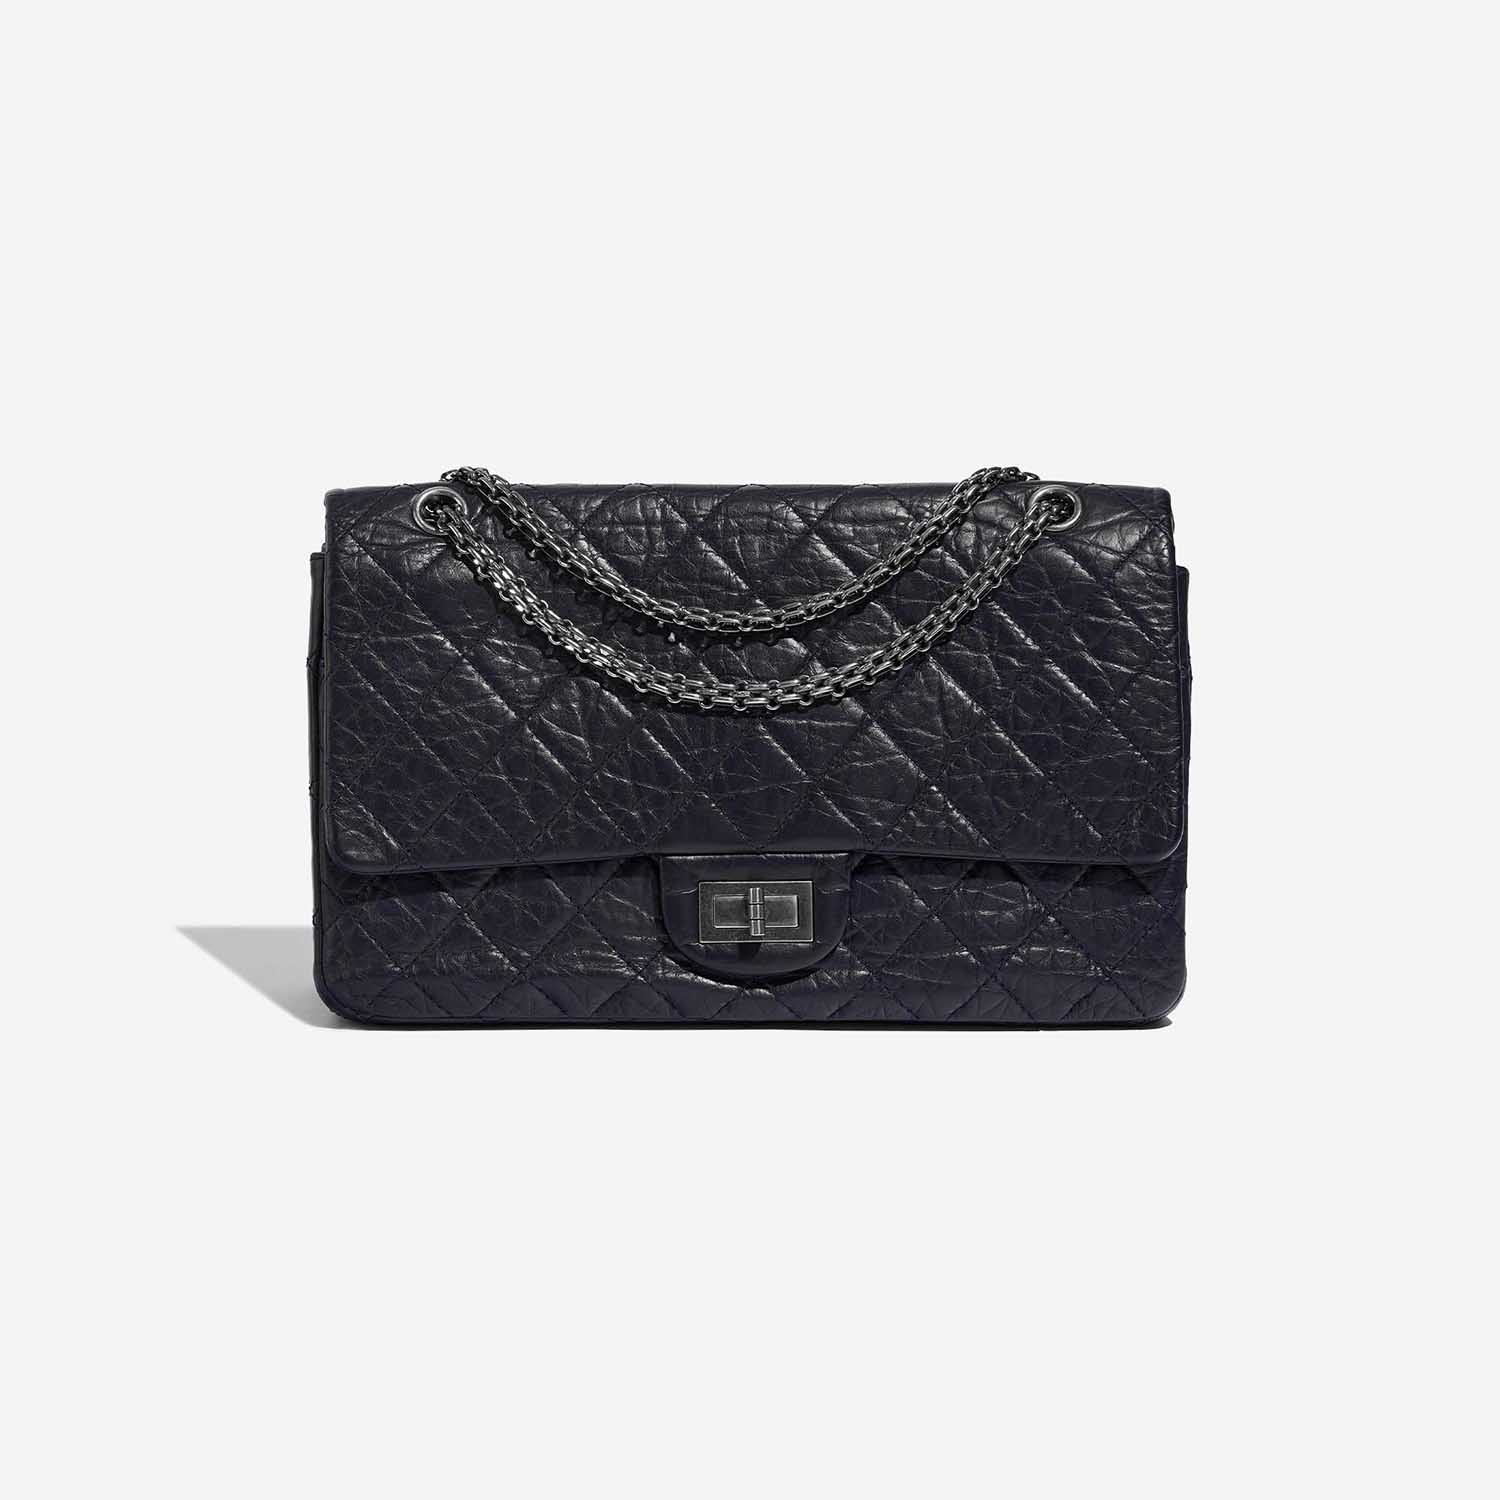 Pre-owned Chanel Tasche 2.55 Reissue 227 Aged Calfskin Dark Blue Front | Verkaufen Sie Ihre Designer-Tasche auf Saclab.com